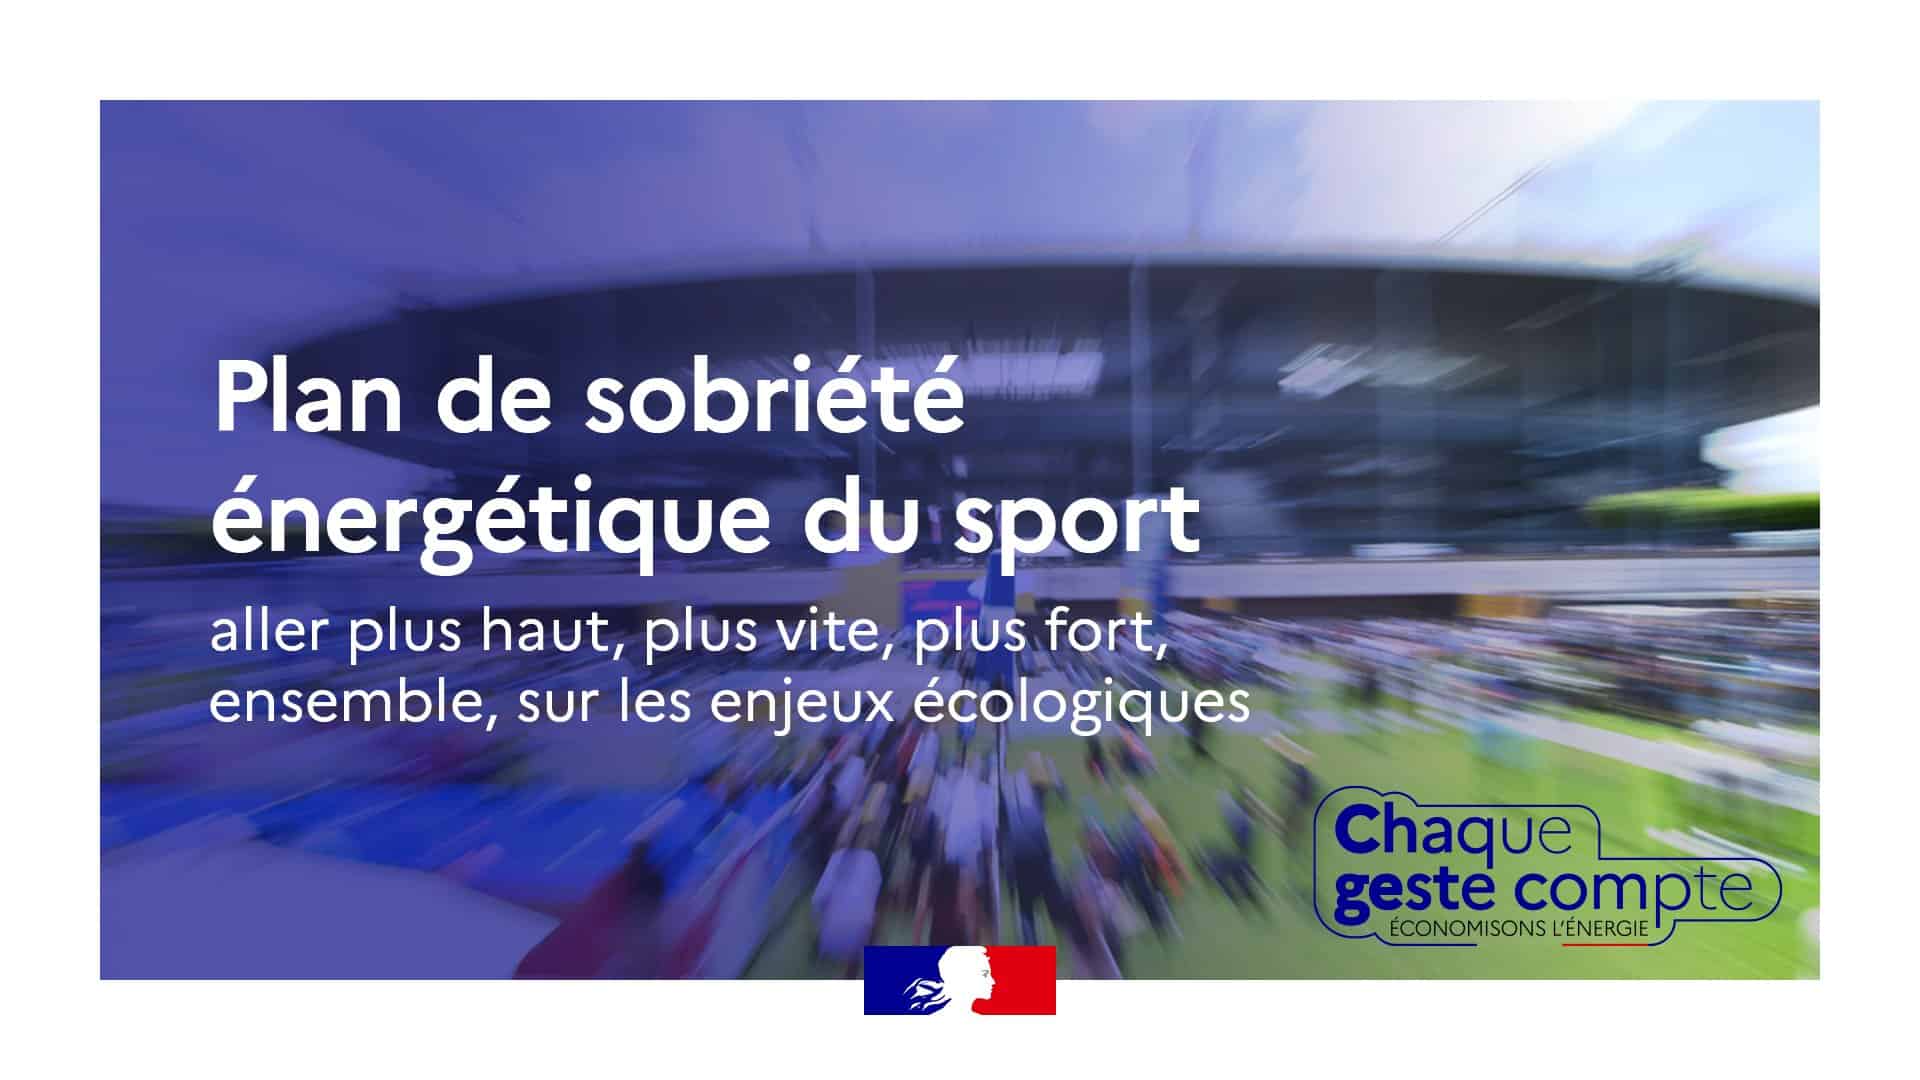 Sport professionnel/transports: lancement d'un "groupe de travail" (Oudéa-Castéra)